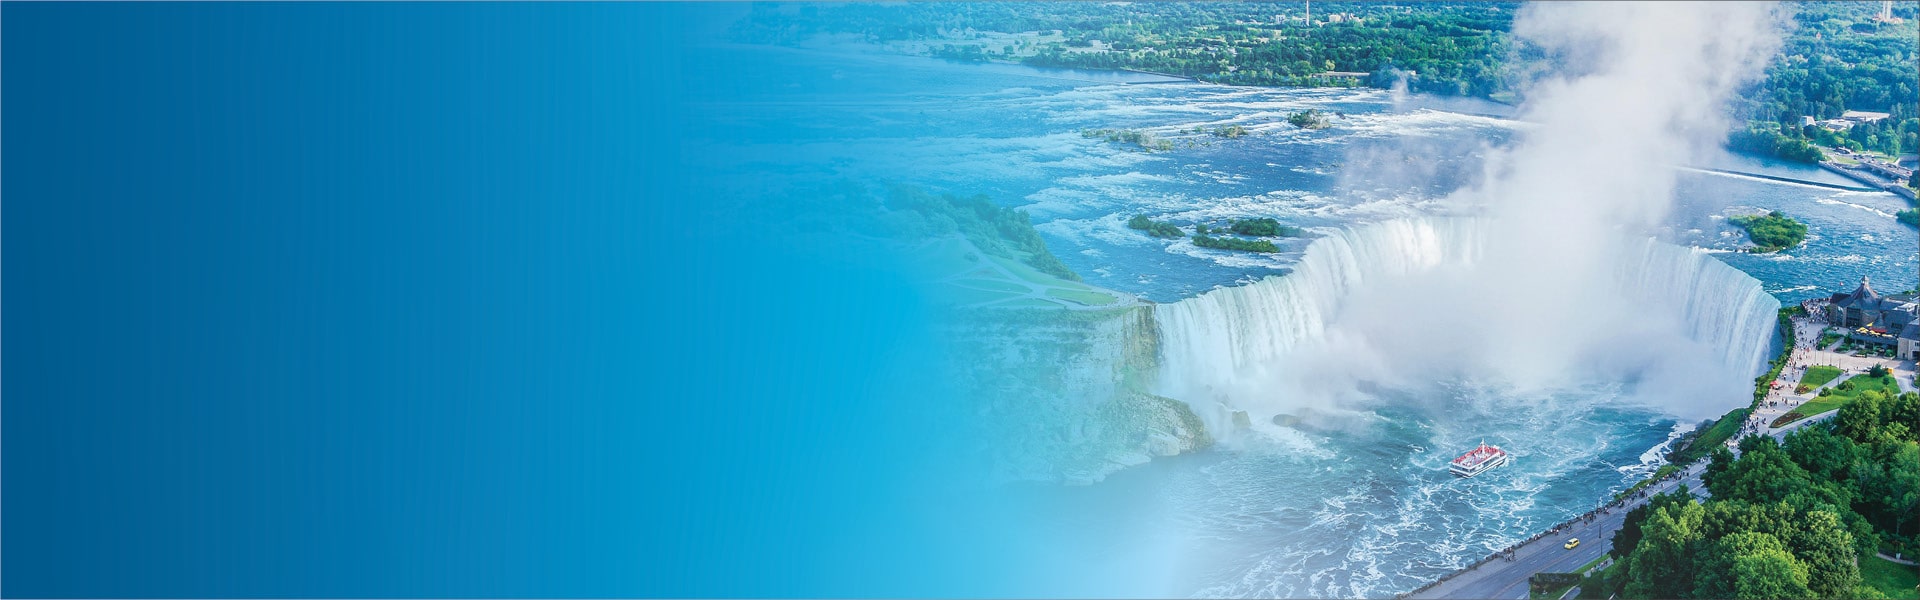 Scenic aerial view of Niagara Falls